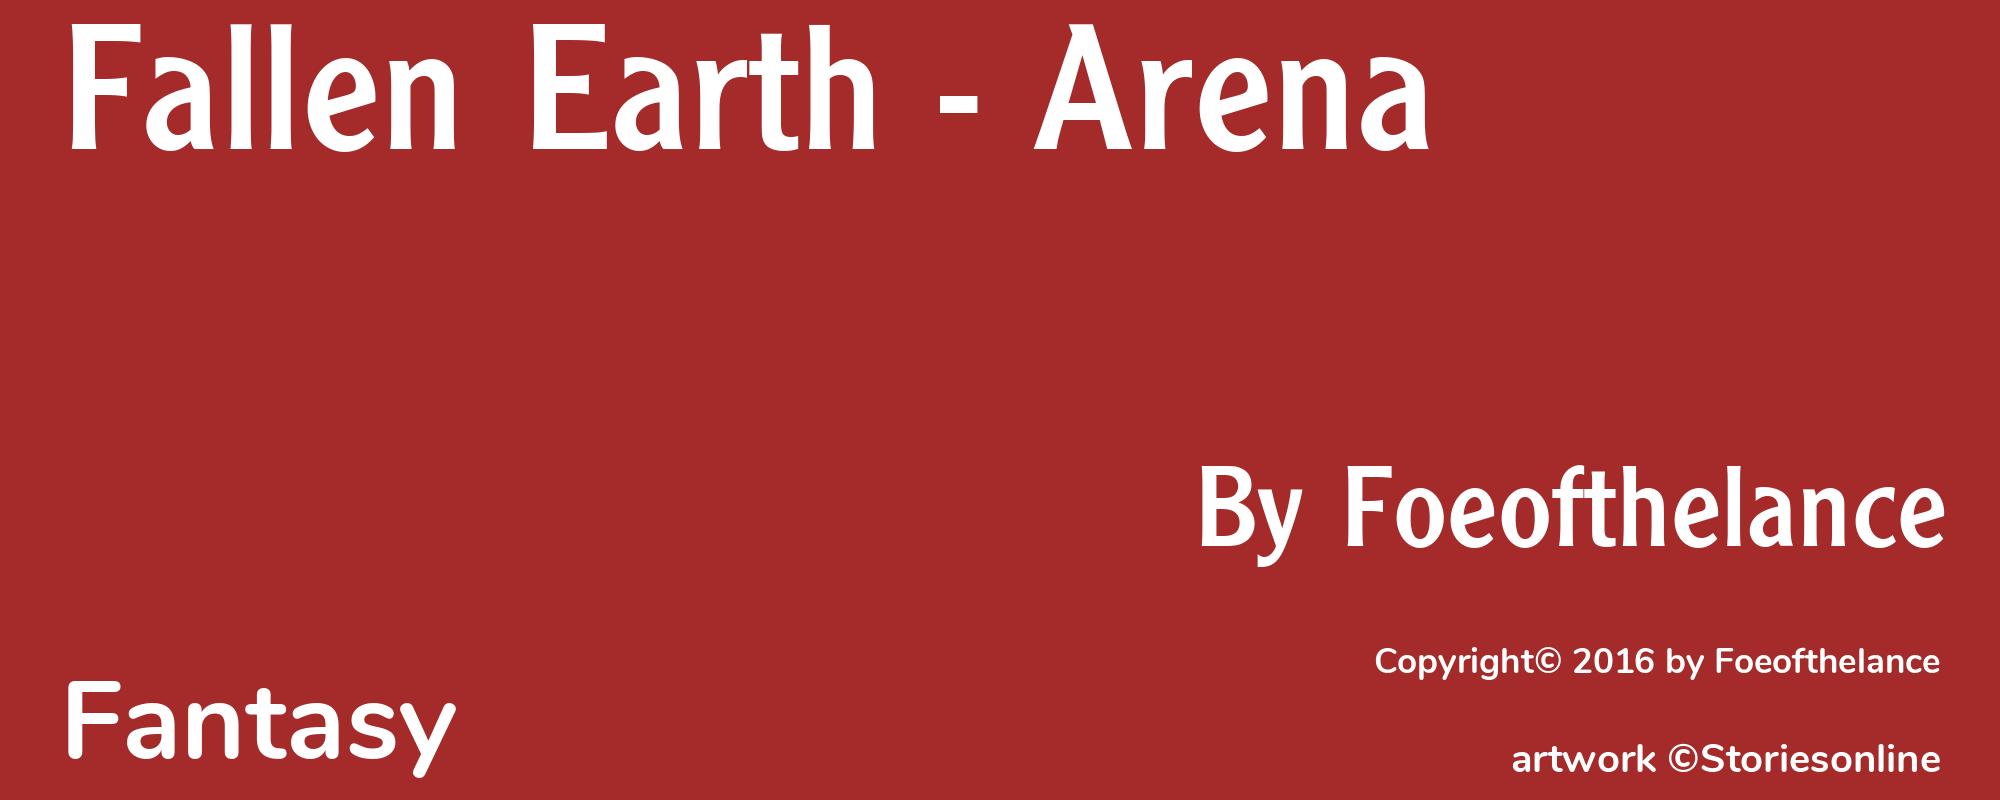 Fallen Earth - Arena - Cover